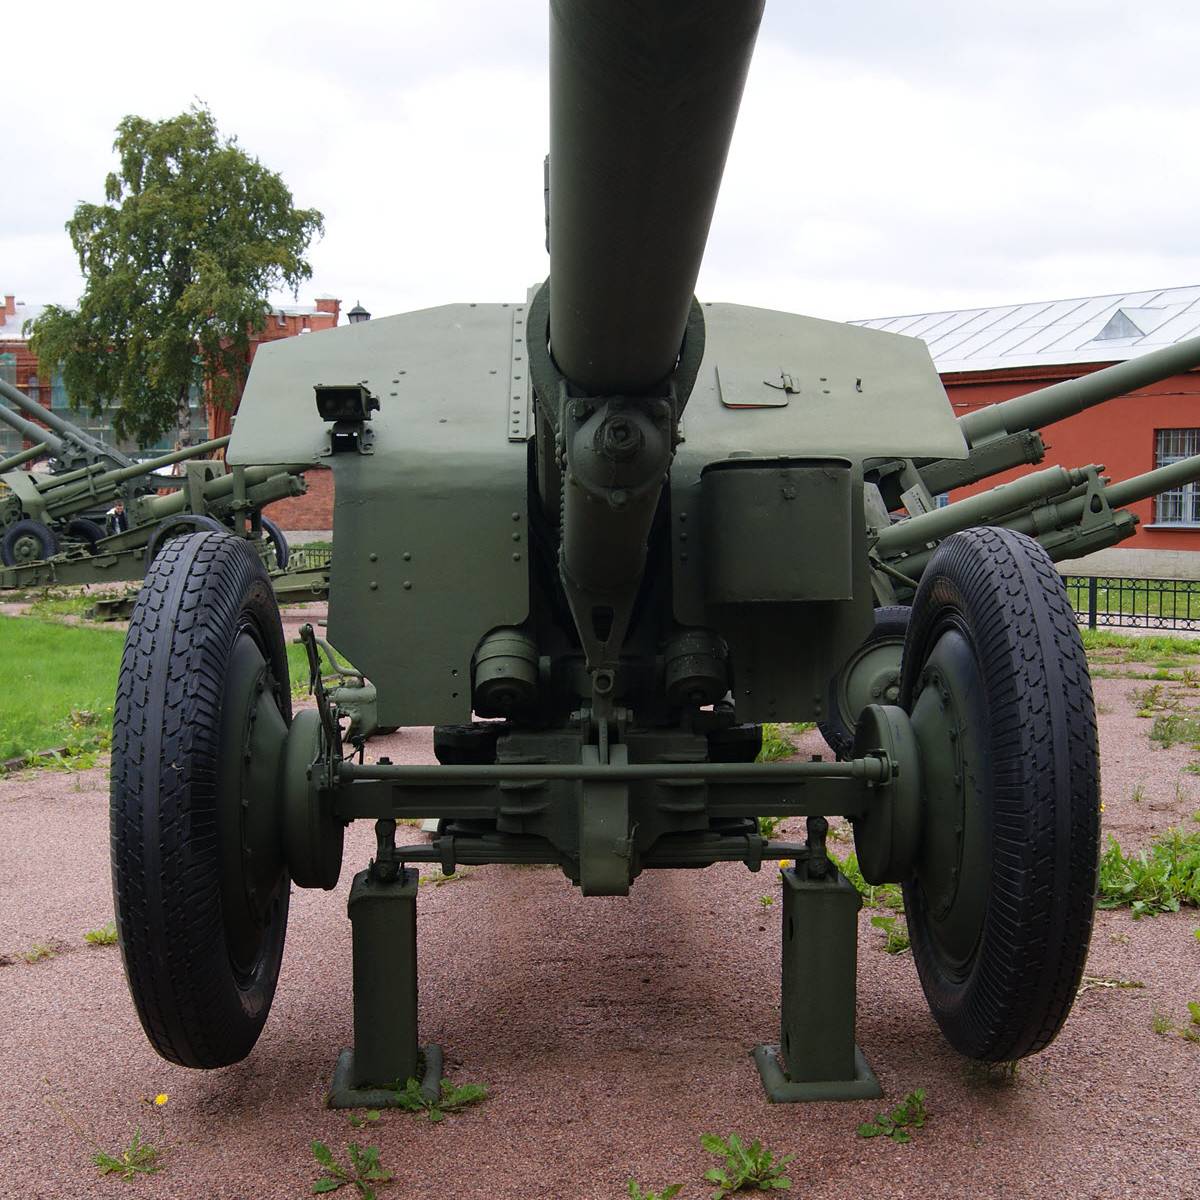 152-мм гаубицу Д-1 можно считать одним из шедевров мировой артиллерии